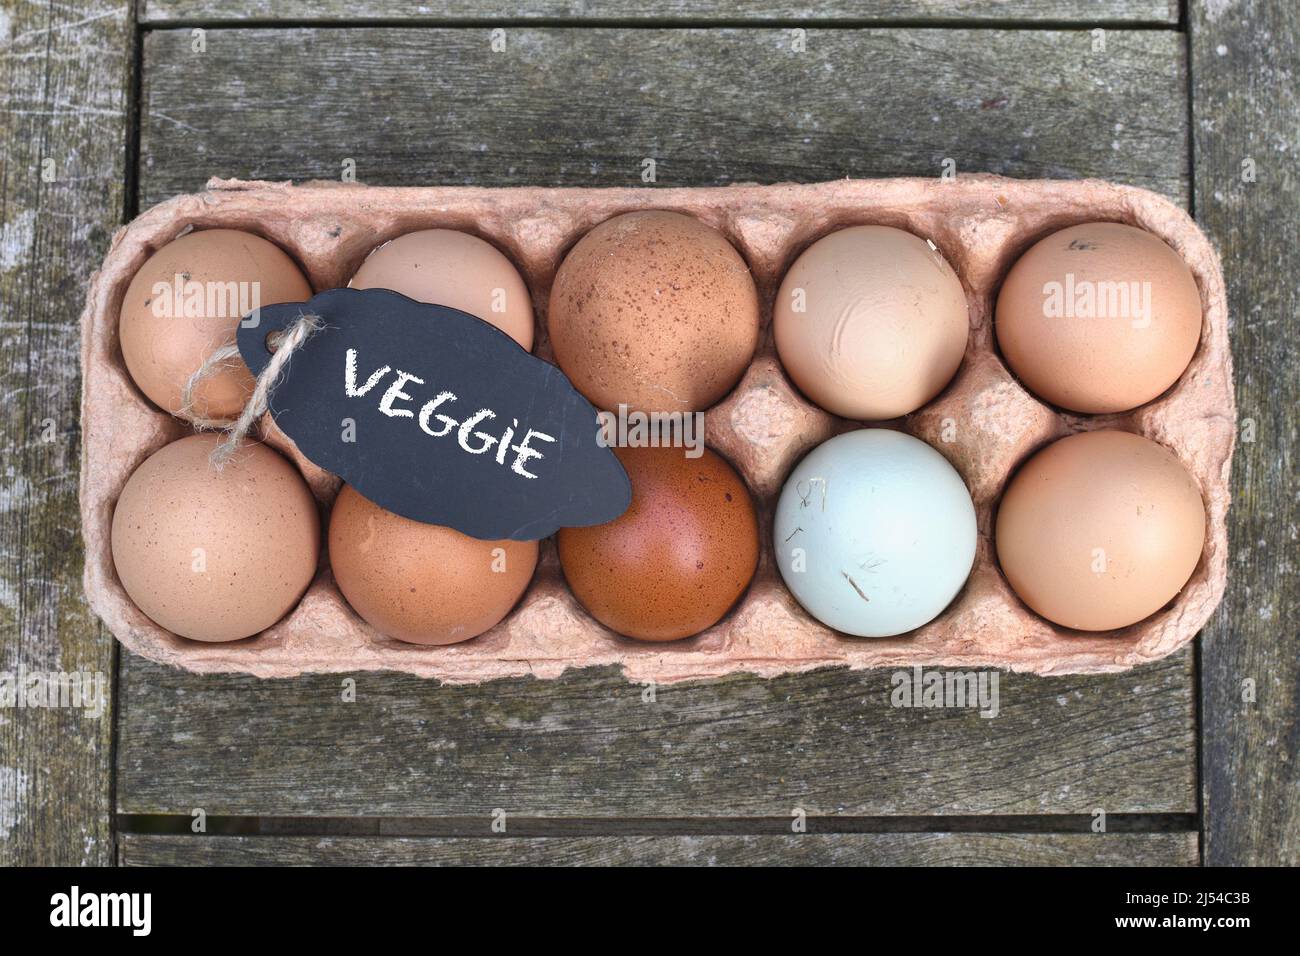 Pizarra con la inscripción 'veggie' en los huevos de pollo en la caja de huevos, Alemania Foto de stock